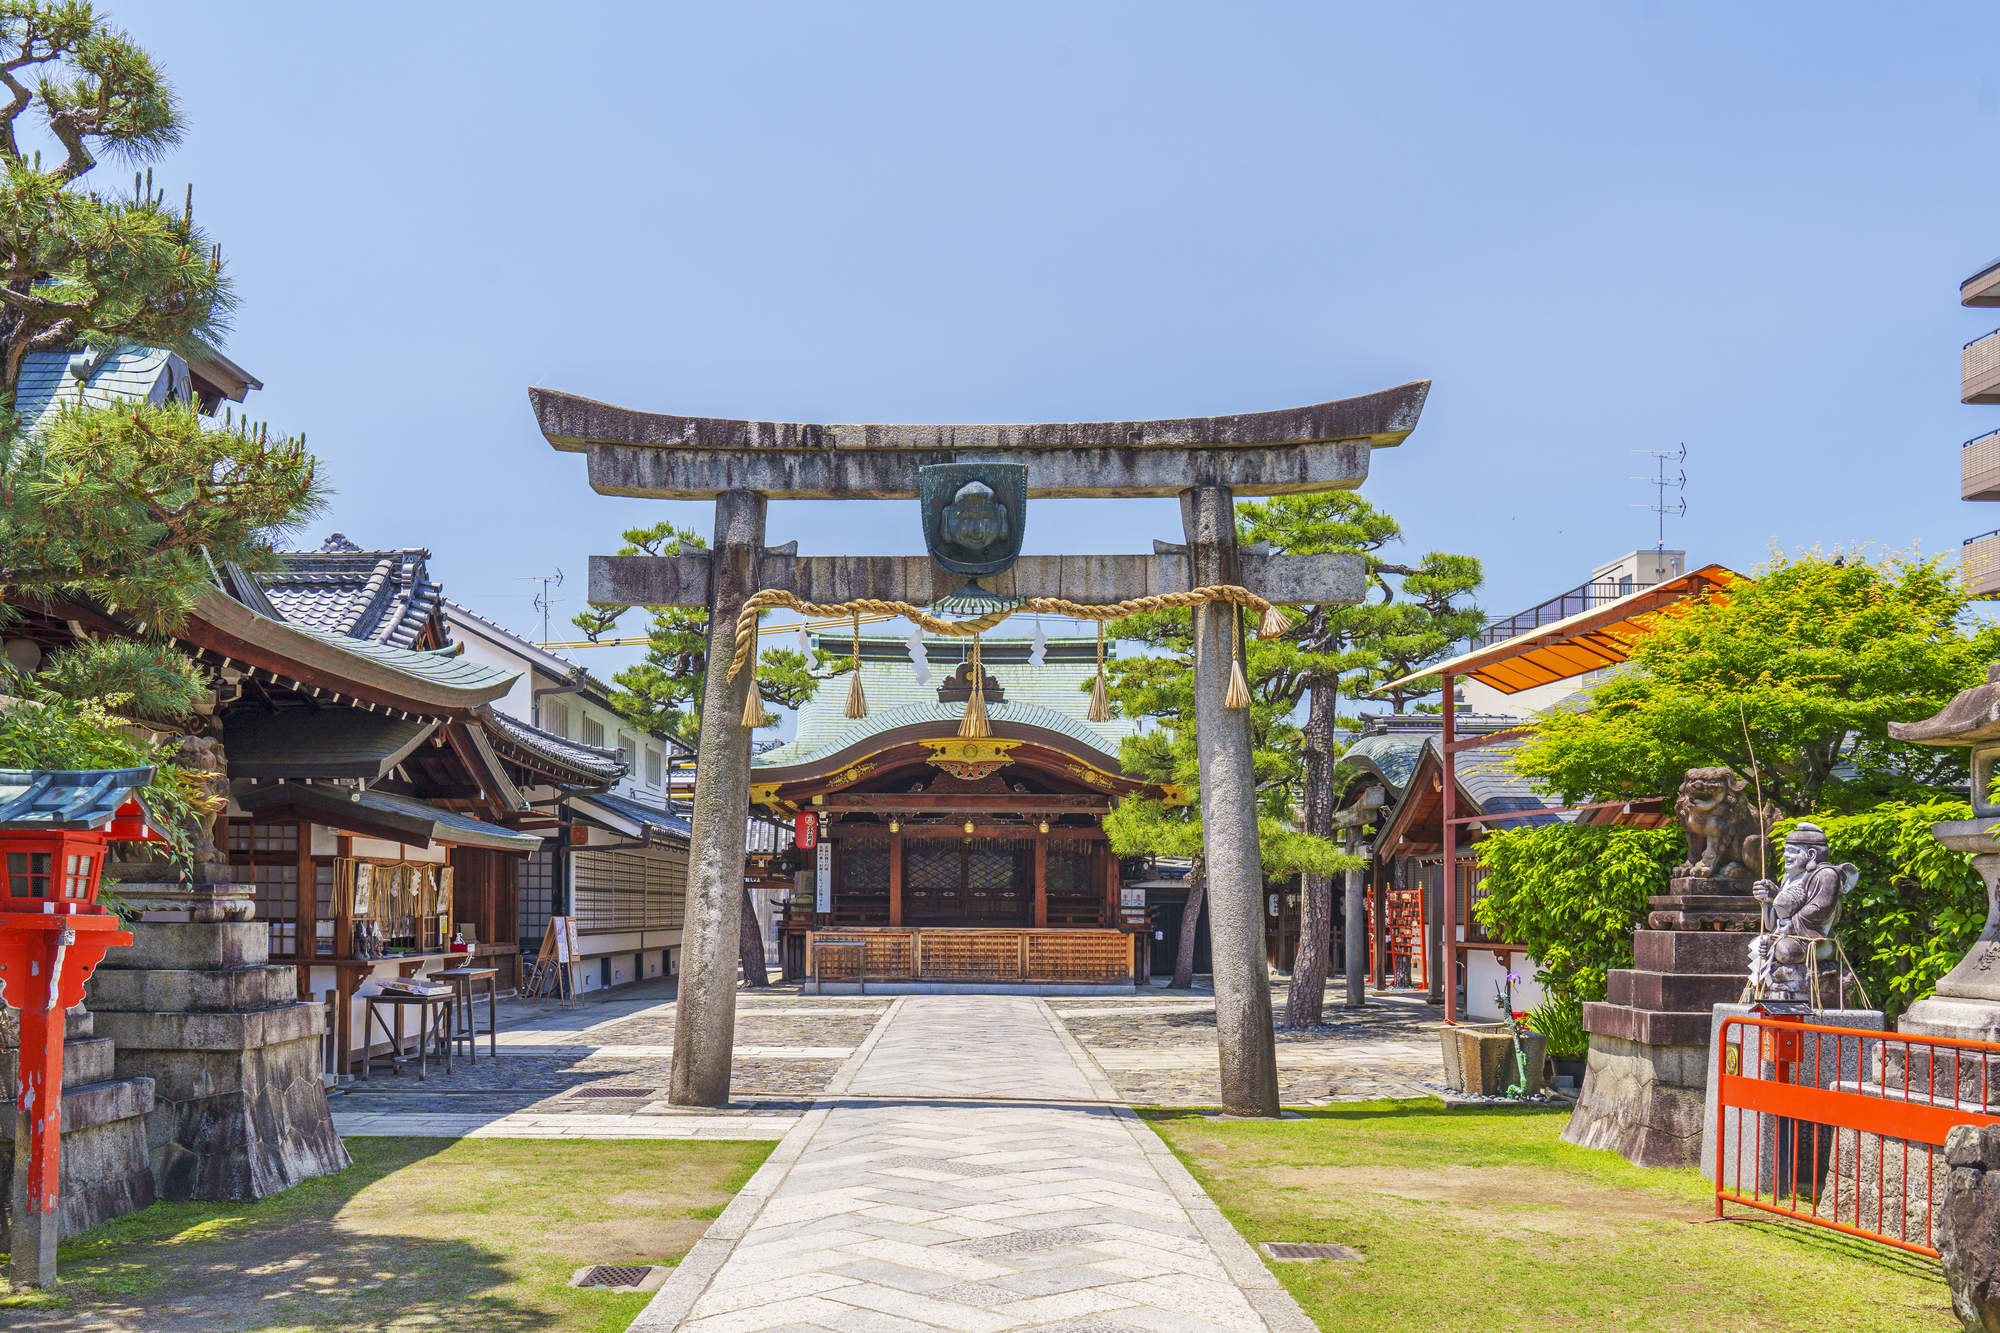 京都ゑびす神社